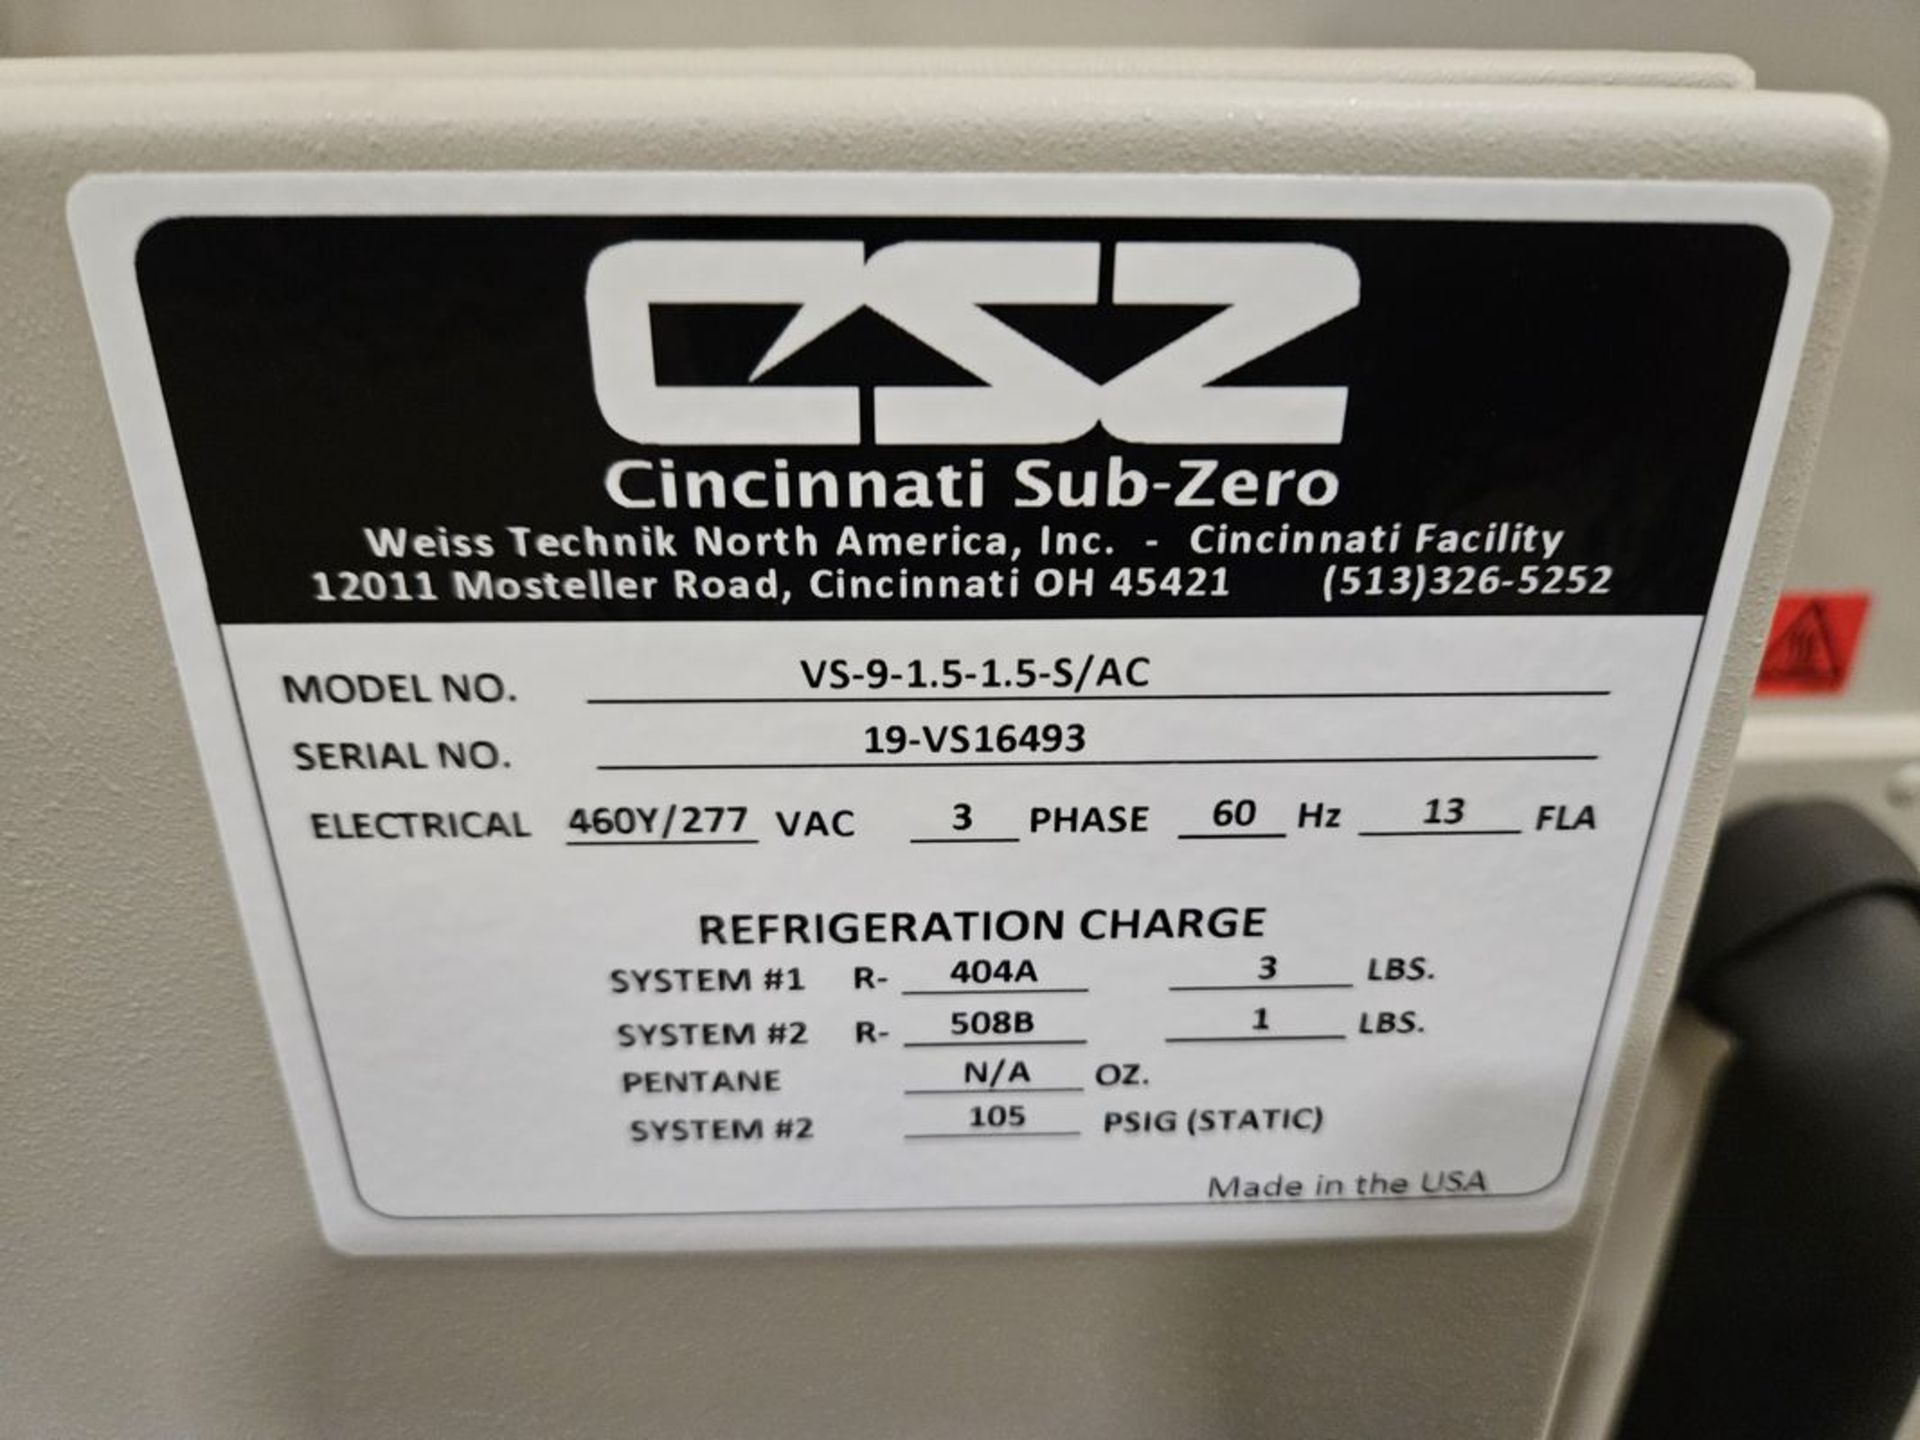 Cincinnati Sub Zero T Series VS-9-1.5-1.5-S/AC Industrial Freezer - Image 3 of 3